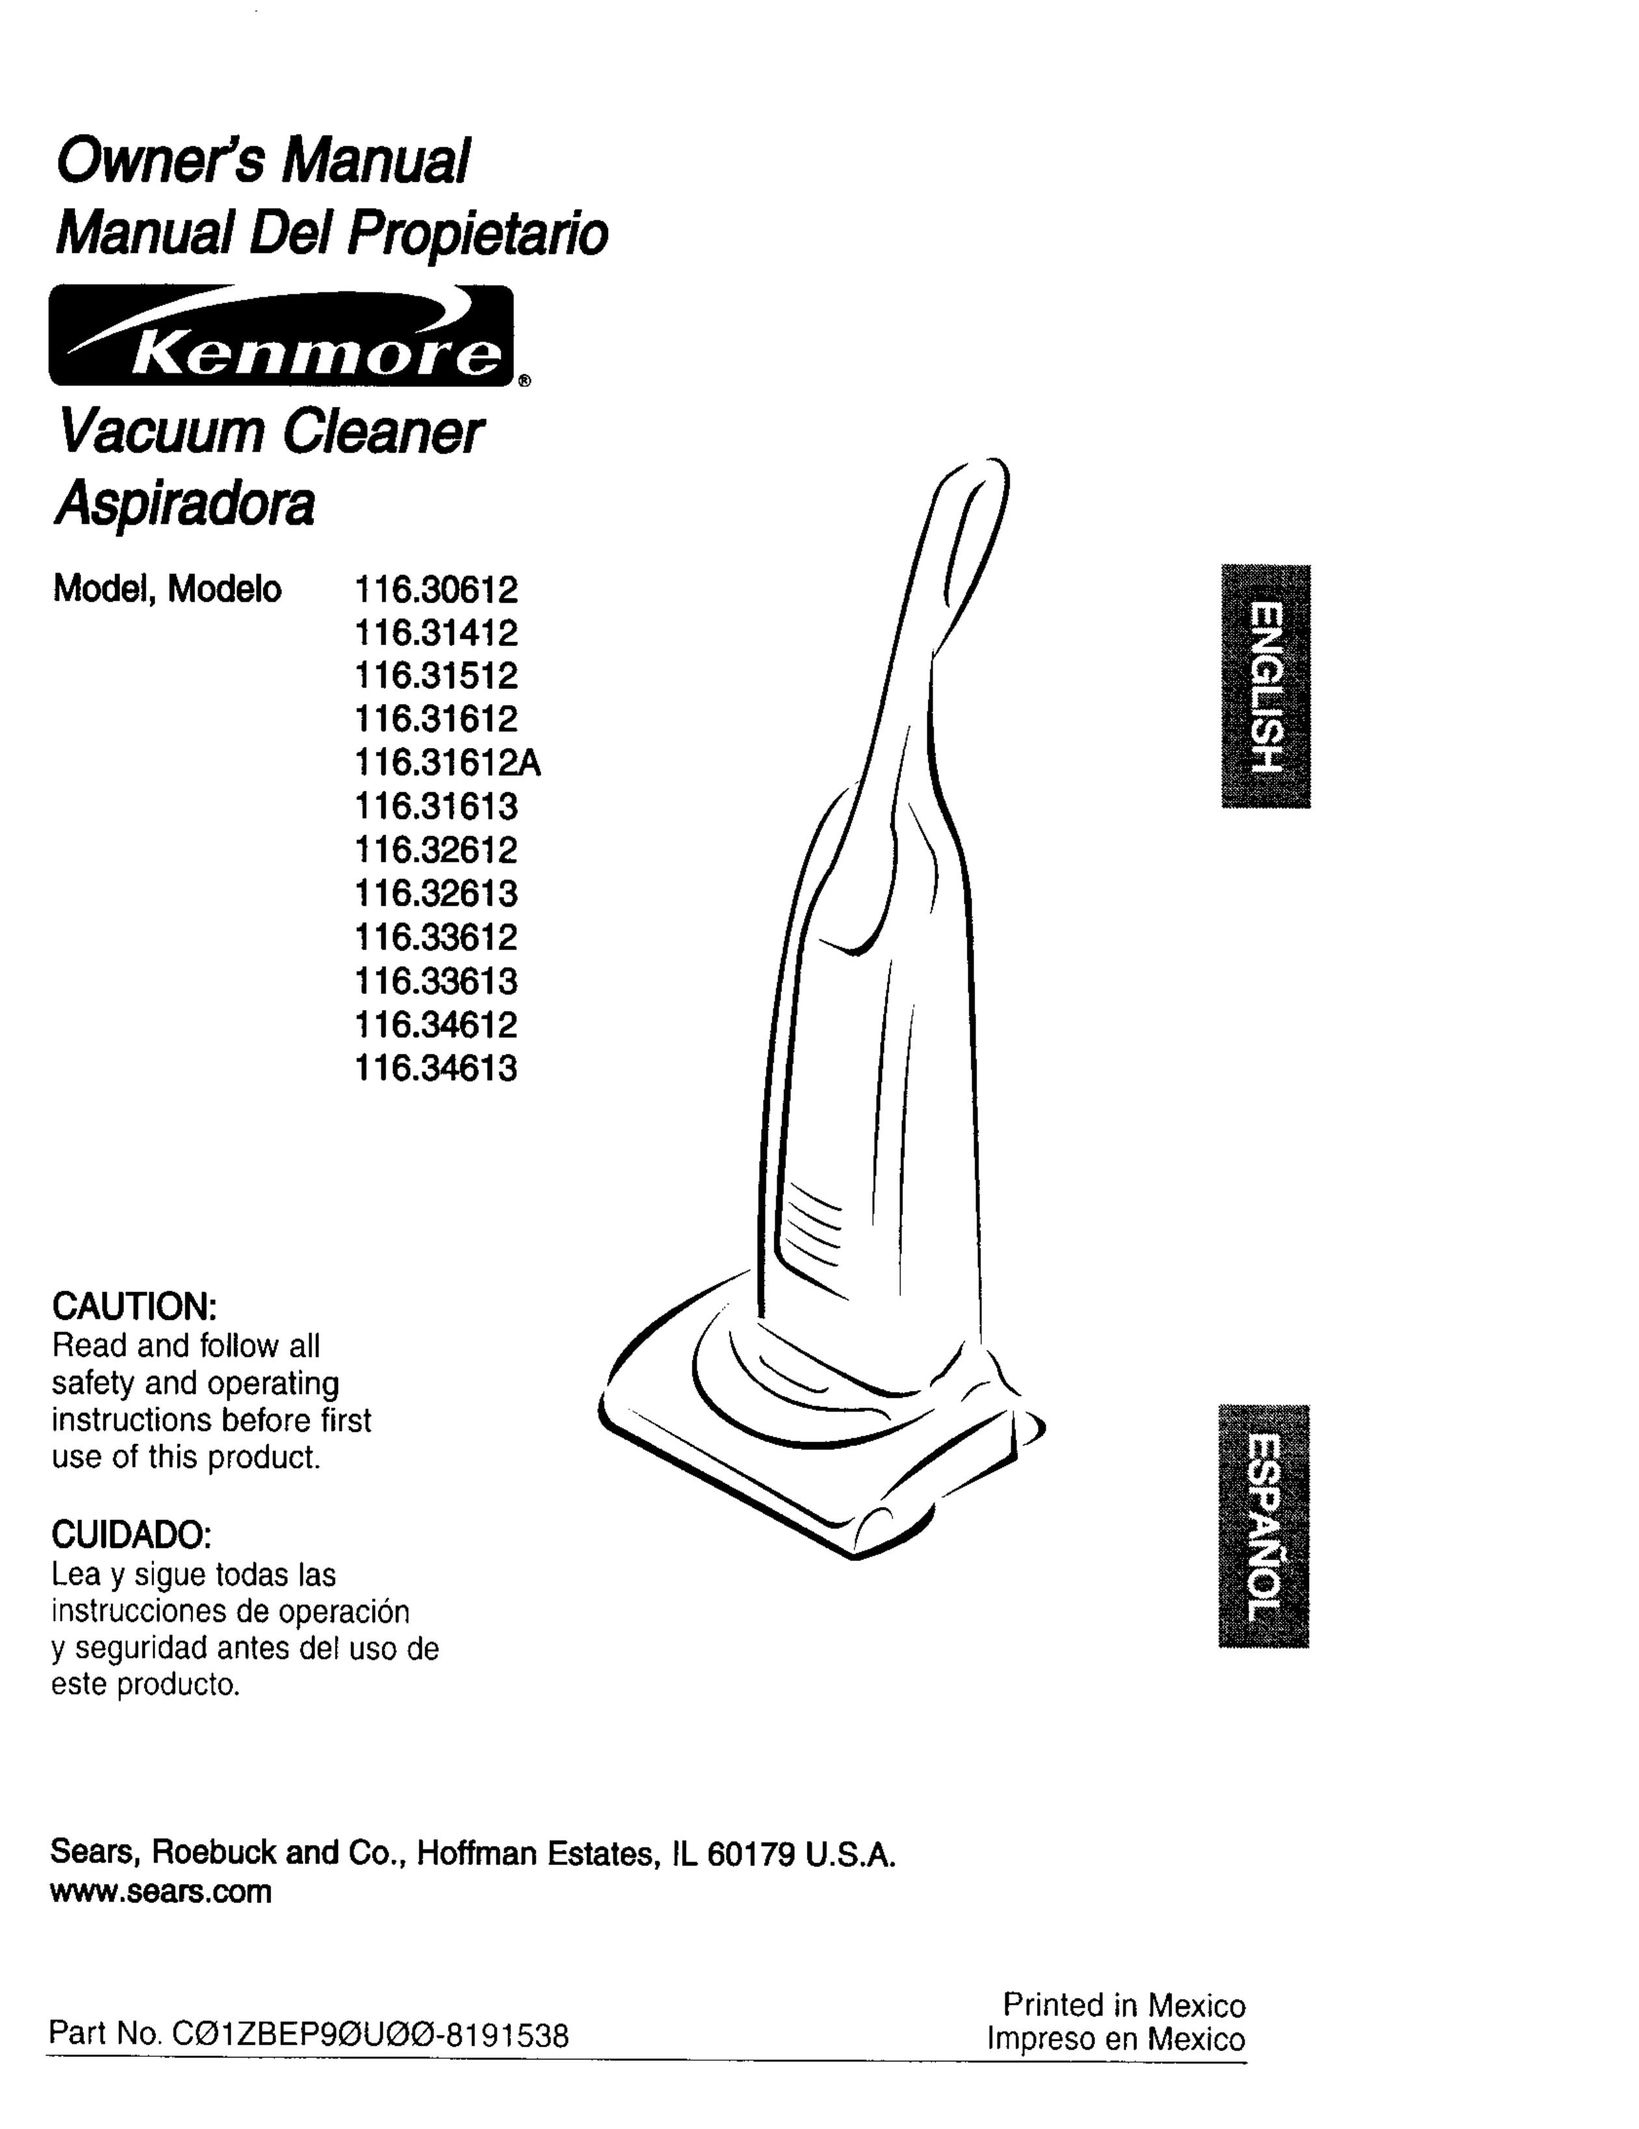 Kenmore 116.31613 Vacuum Cleaner User Manual